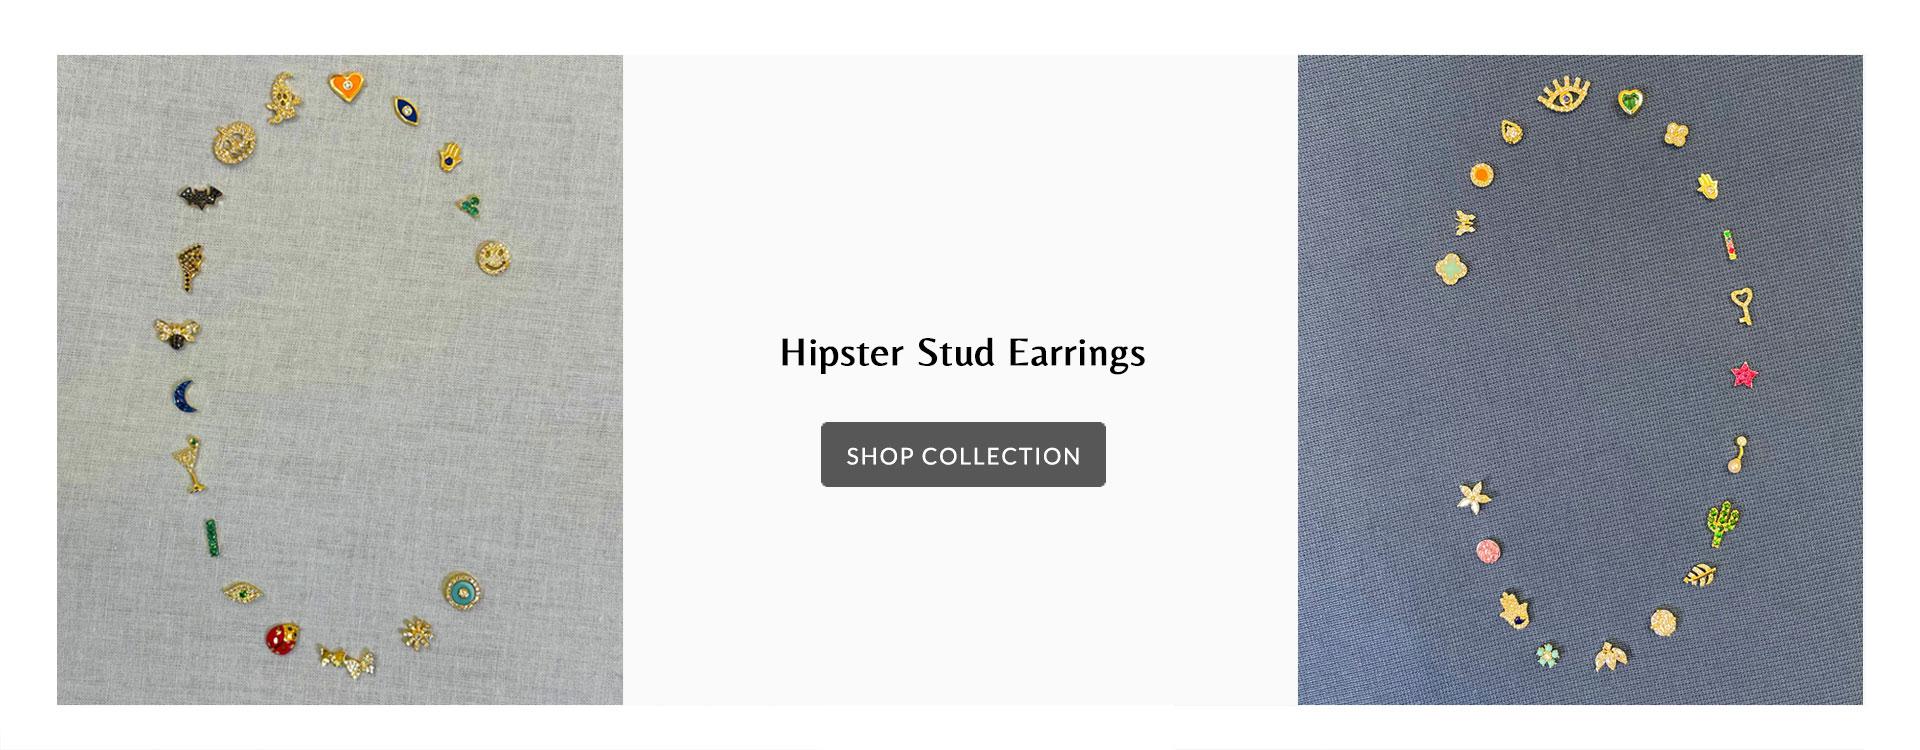 Hipster Stud Earrings